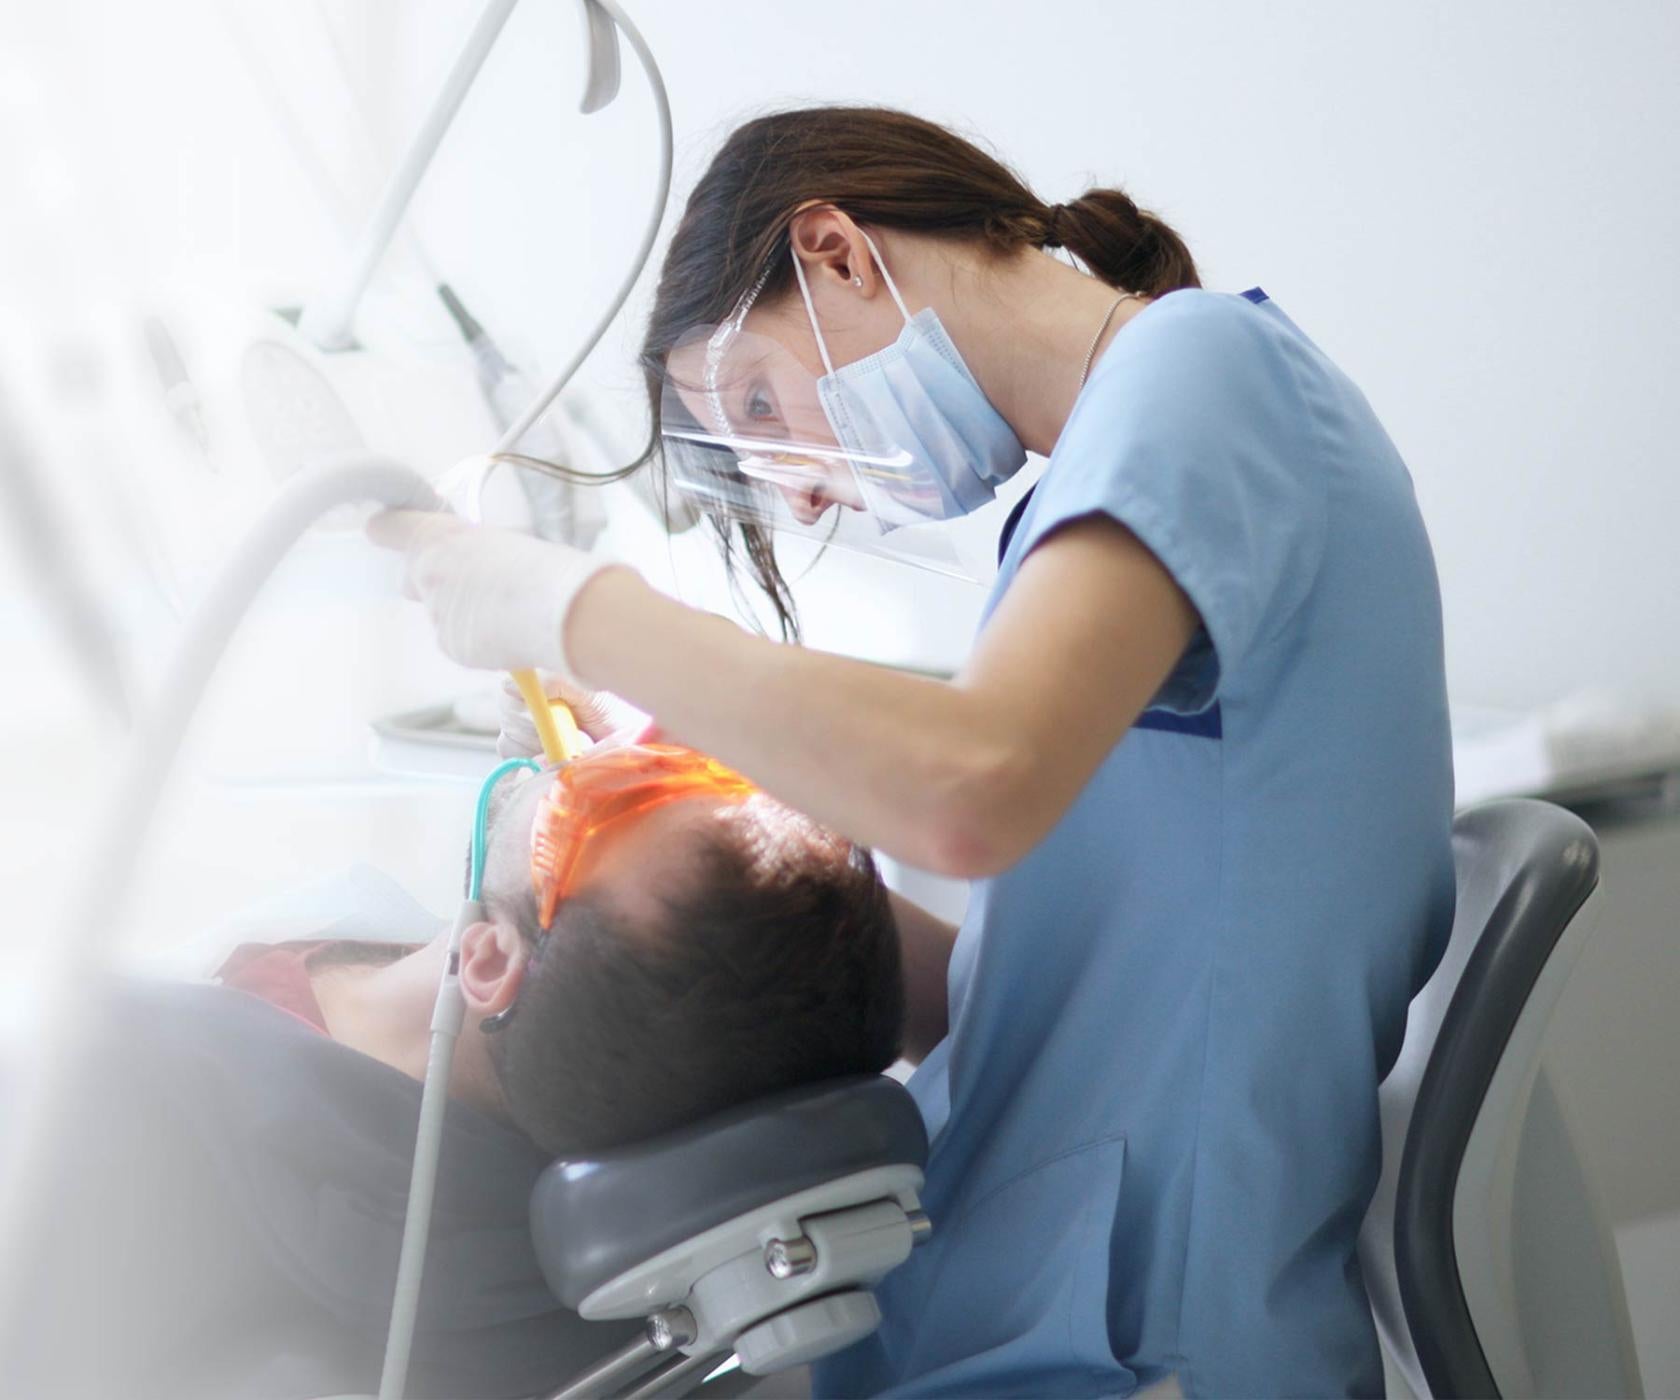 Dentist working on patient 